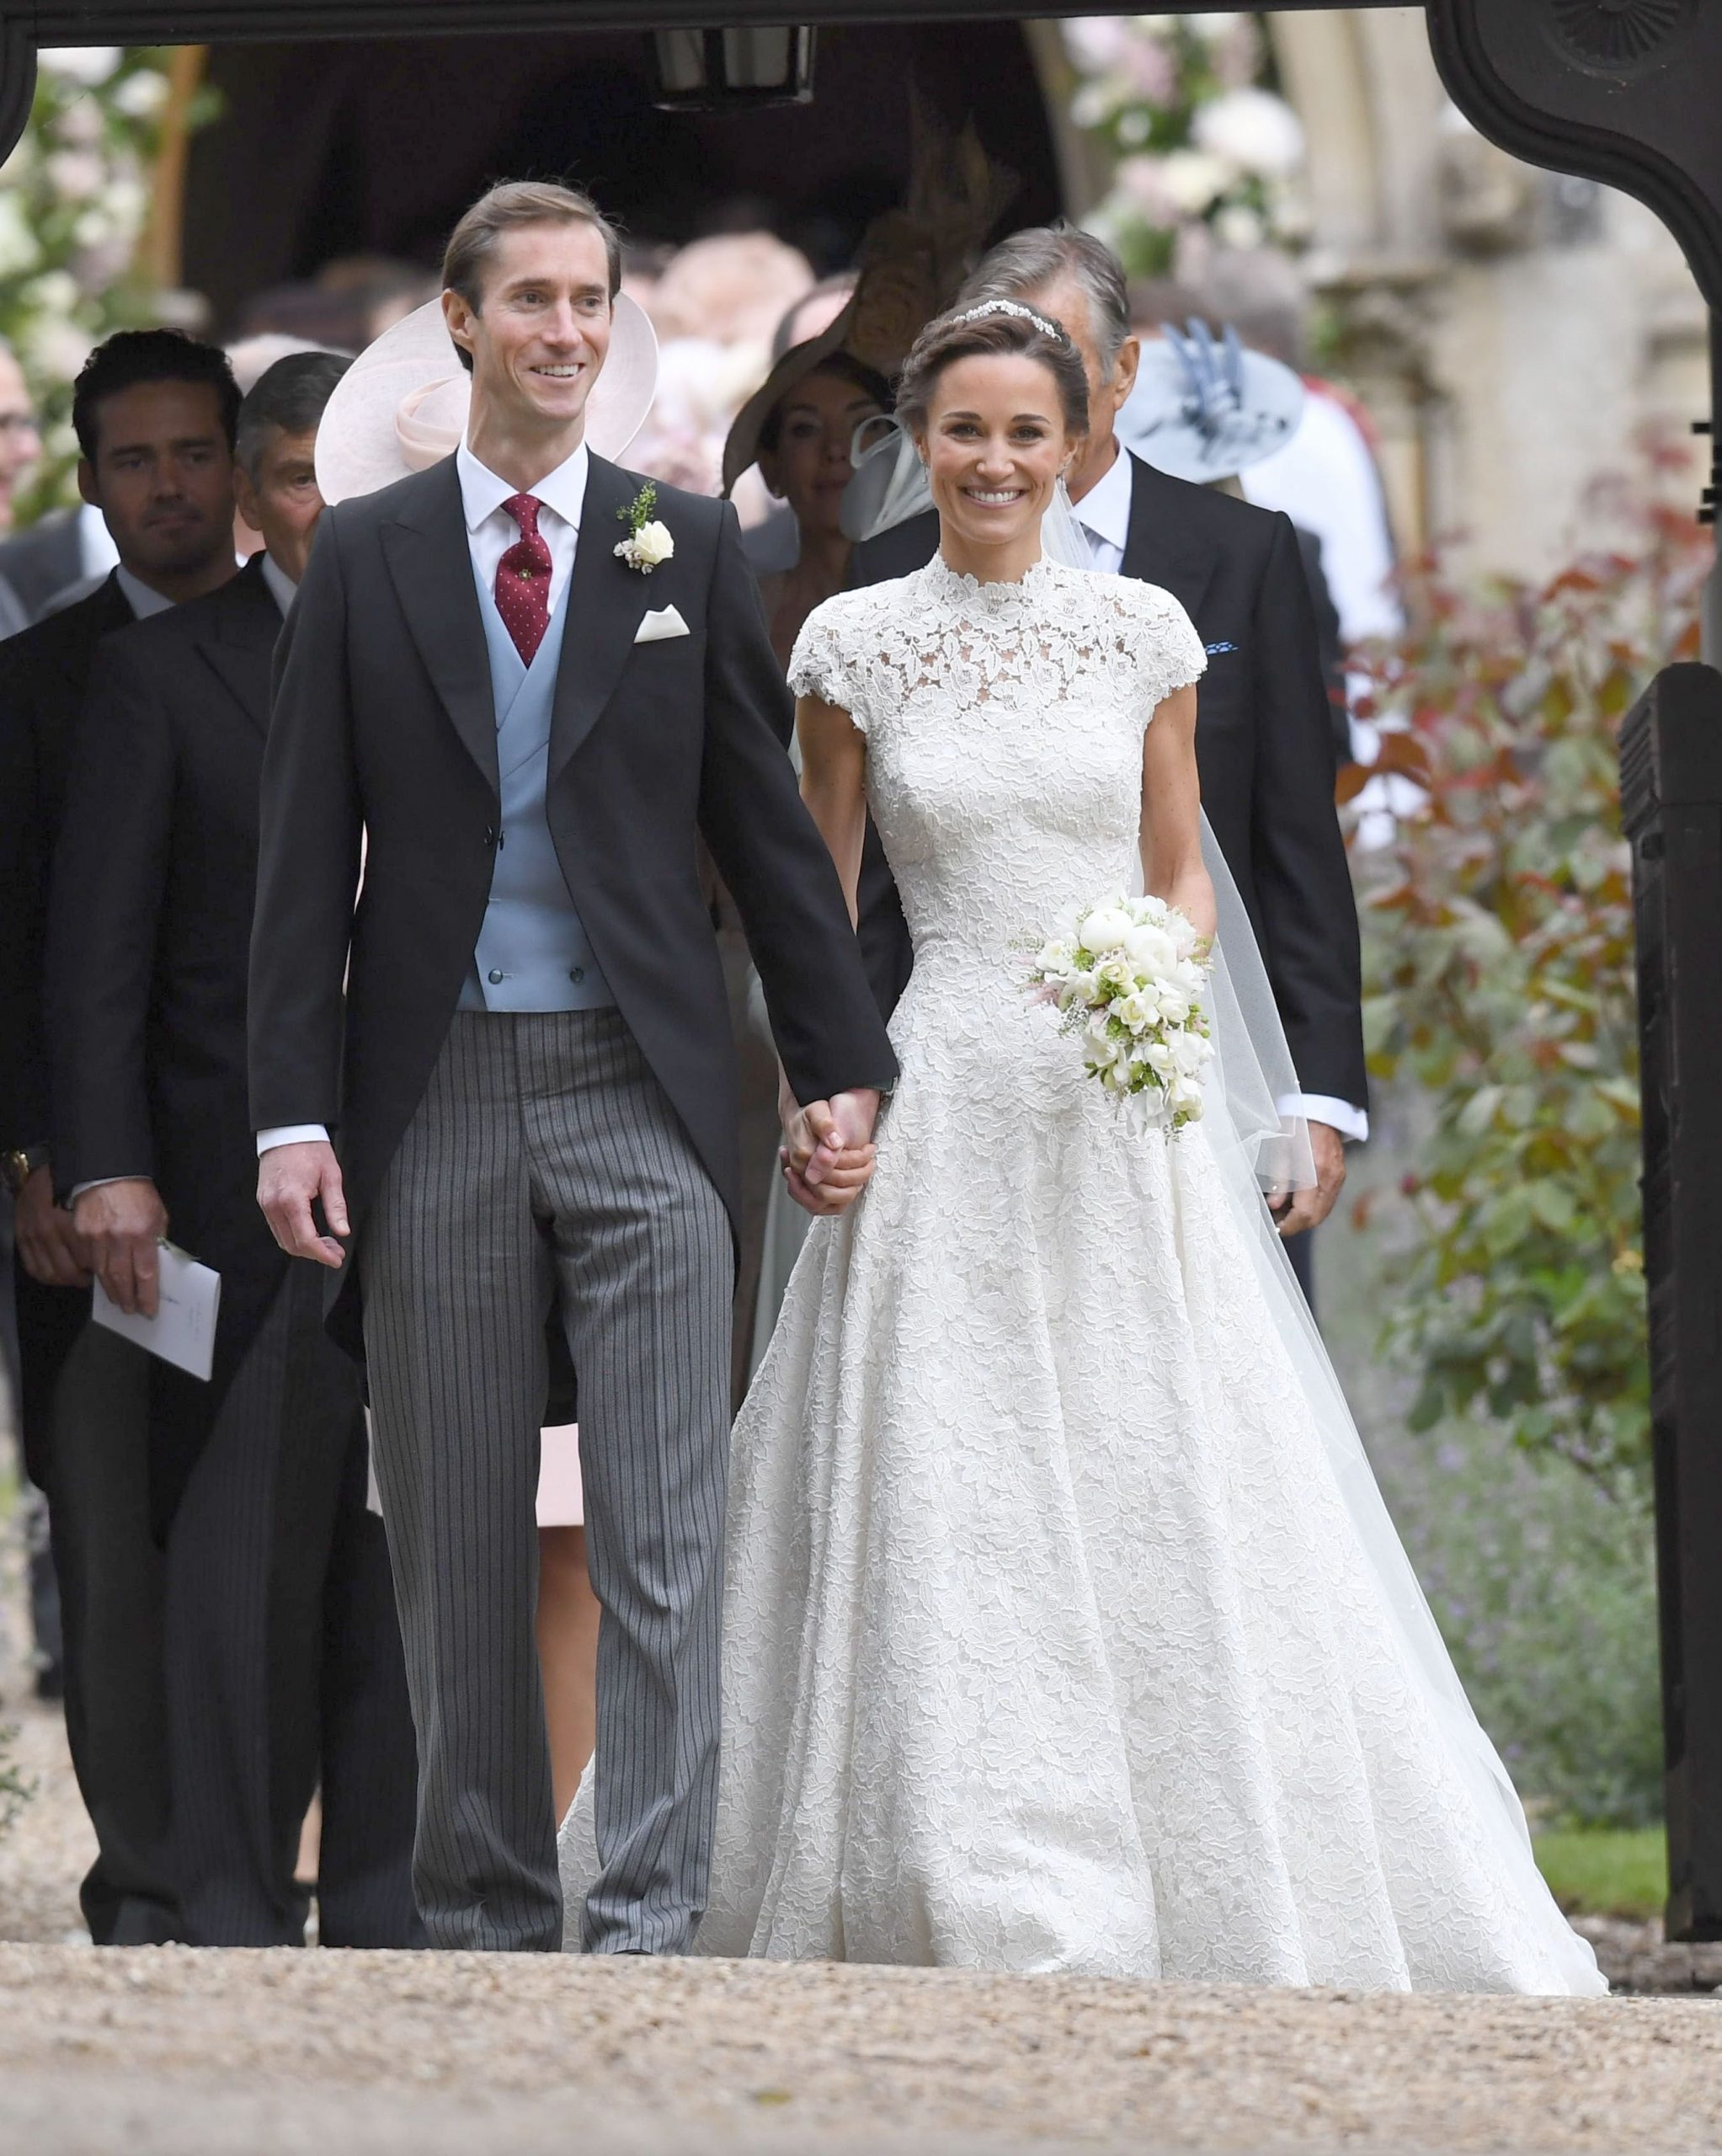 Sora Ducesei de Cambridge, Pippa Middleton, s-a casatorit: imagini de la nunta